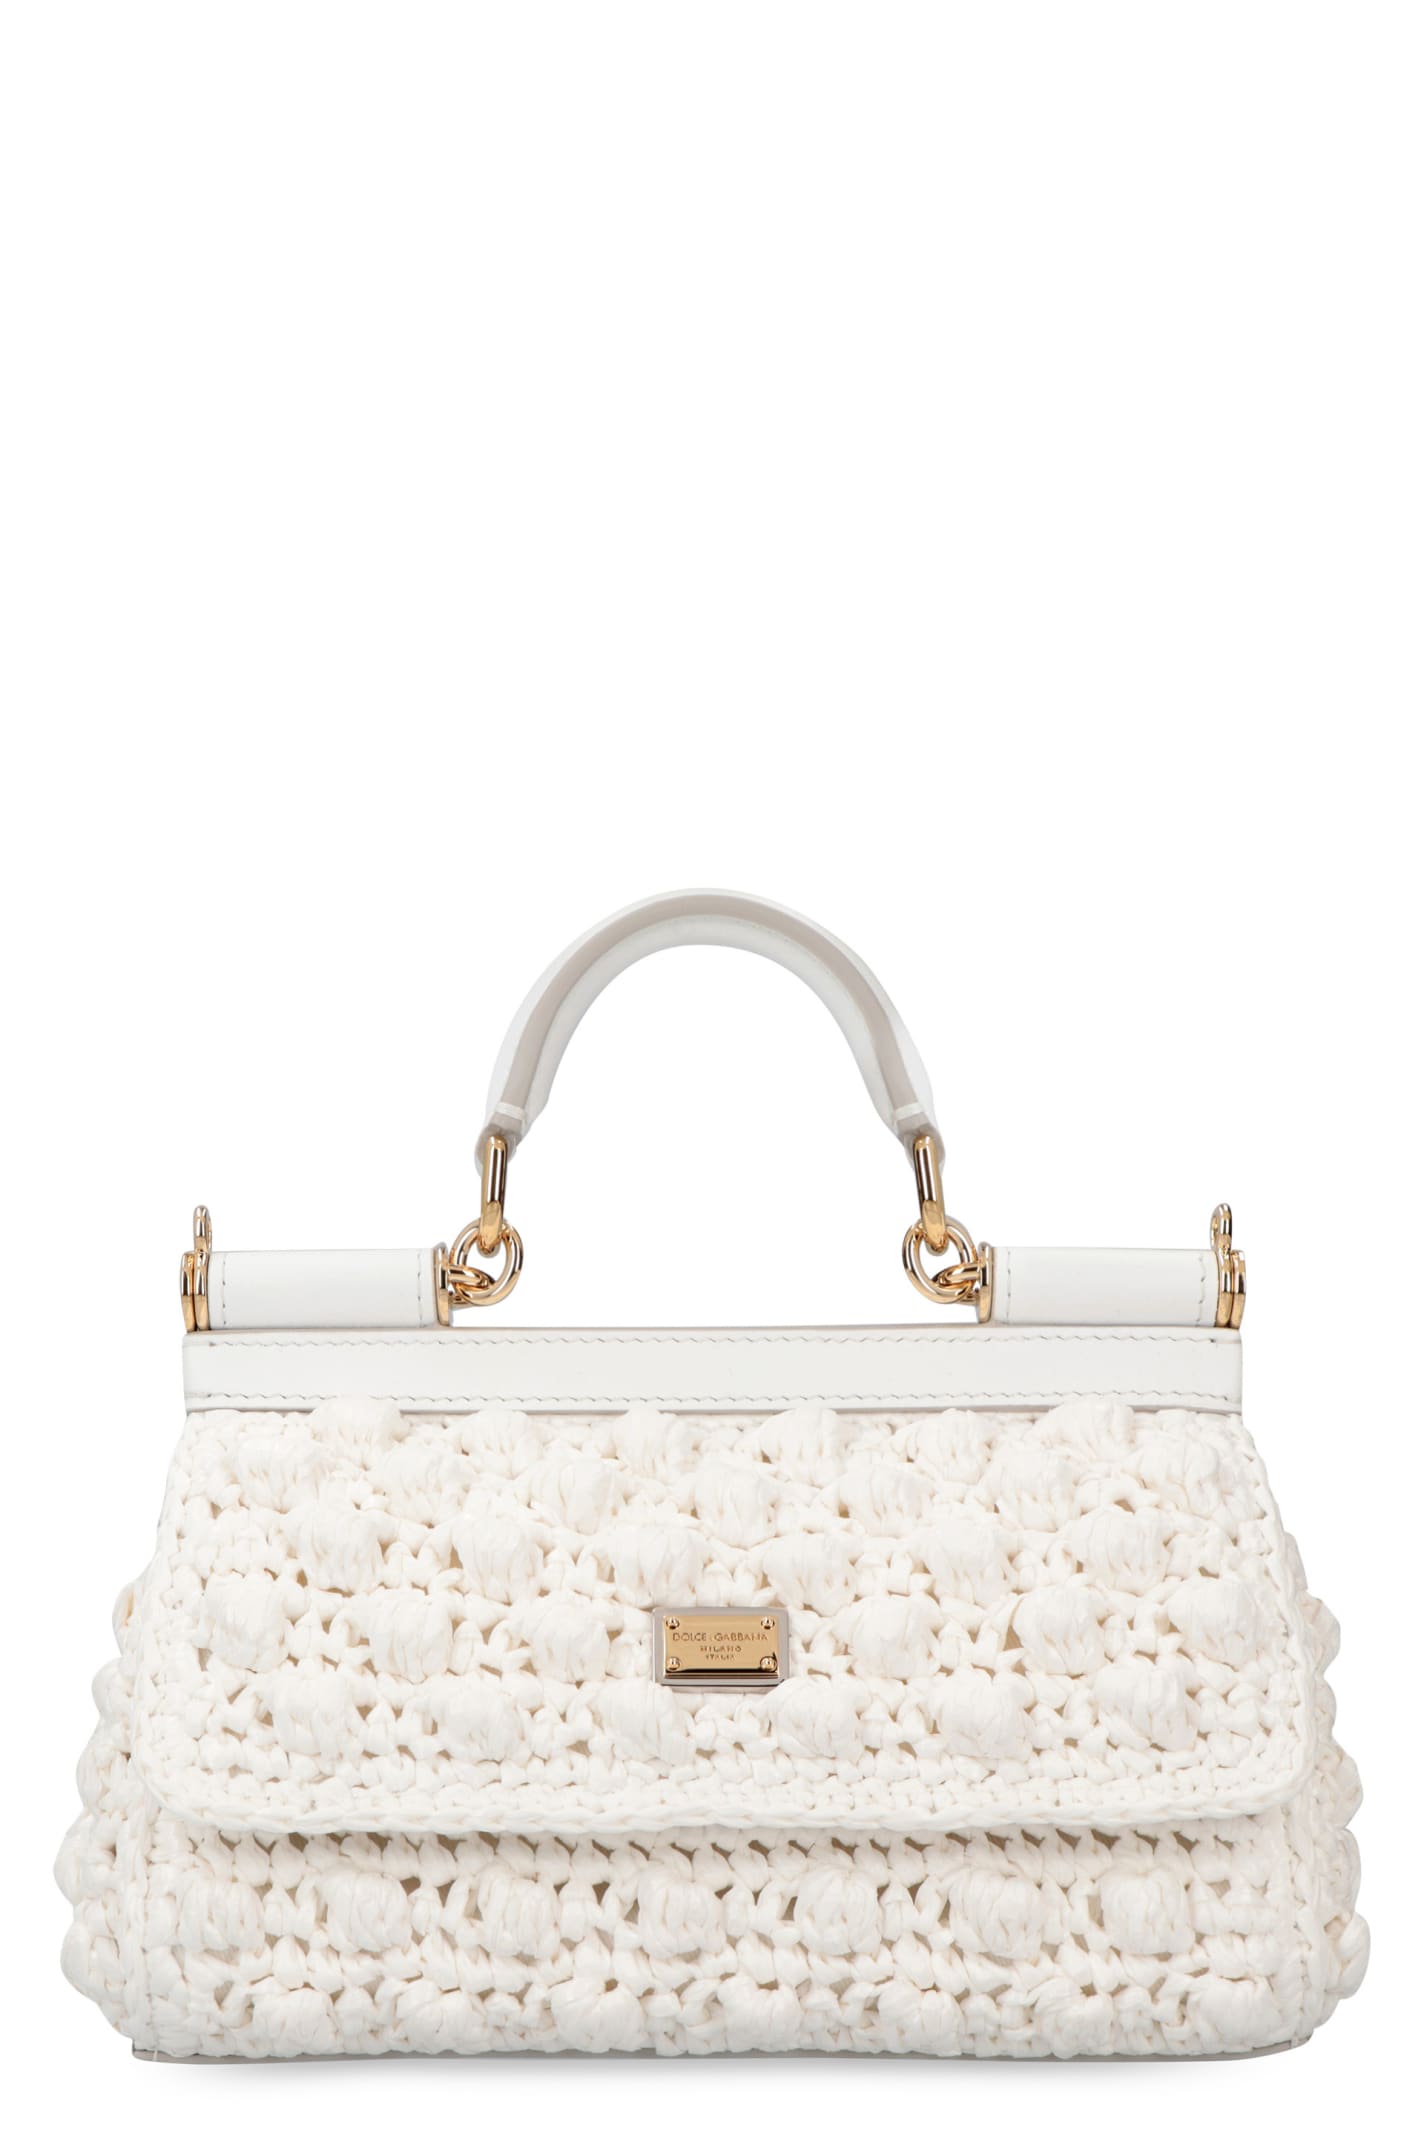 Dolce & Gabbana Sicily Mini Handbag